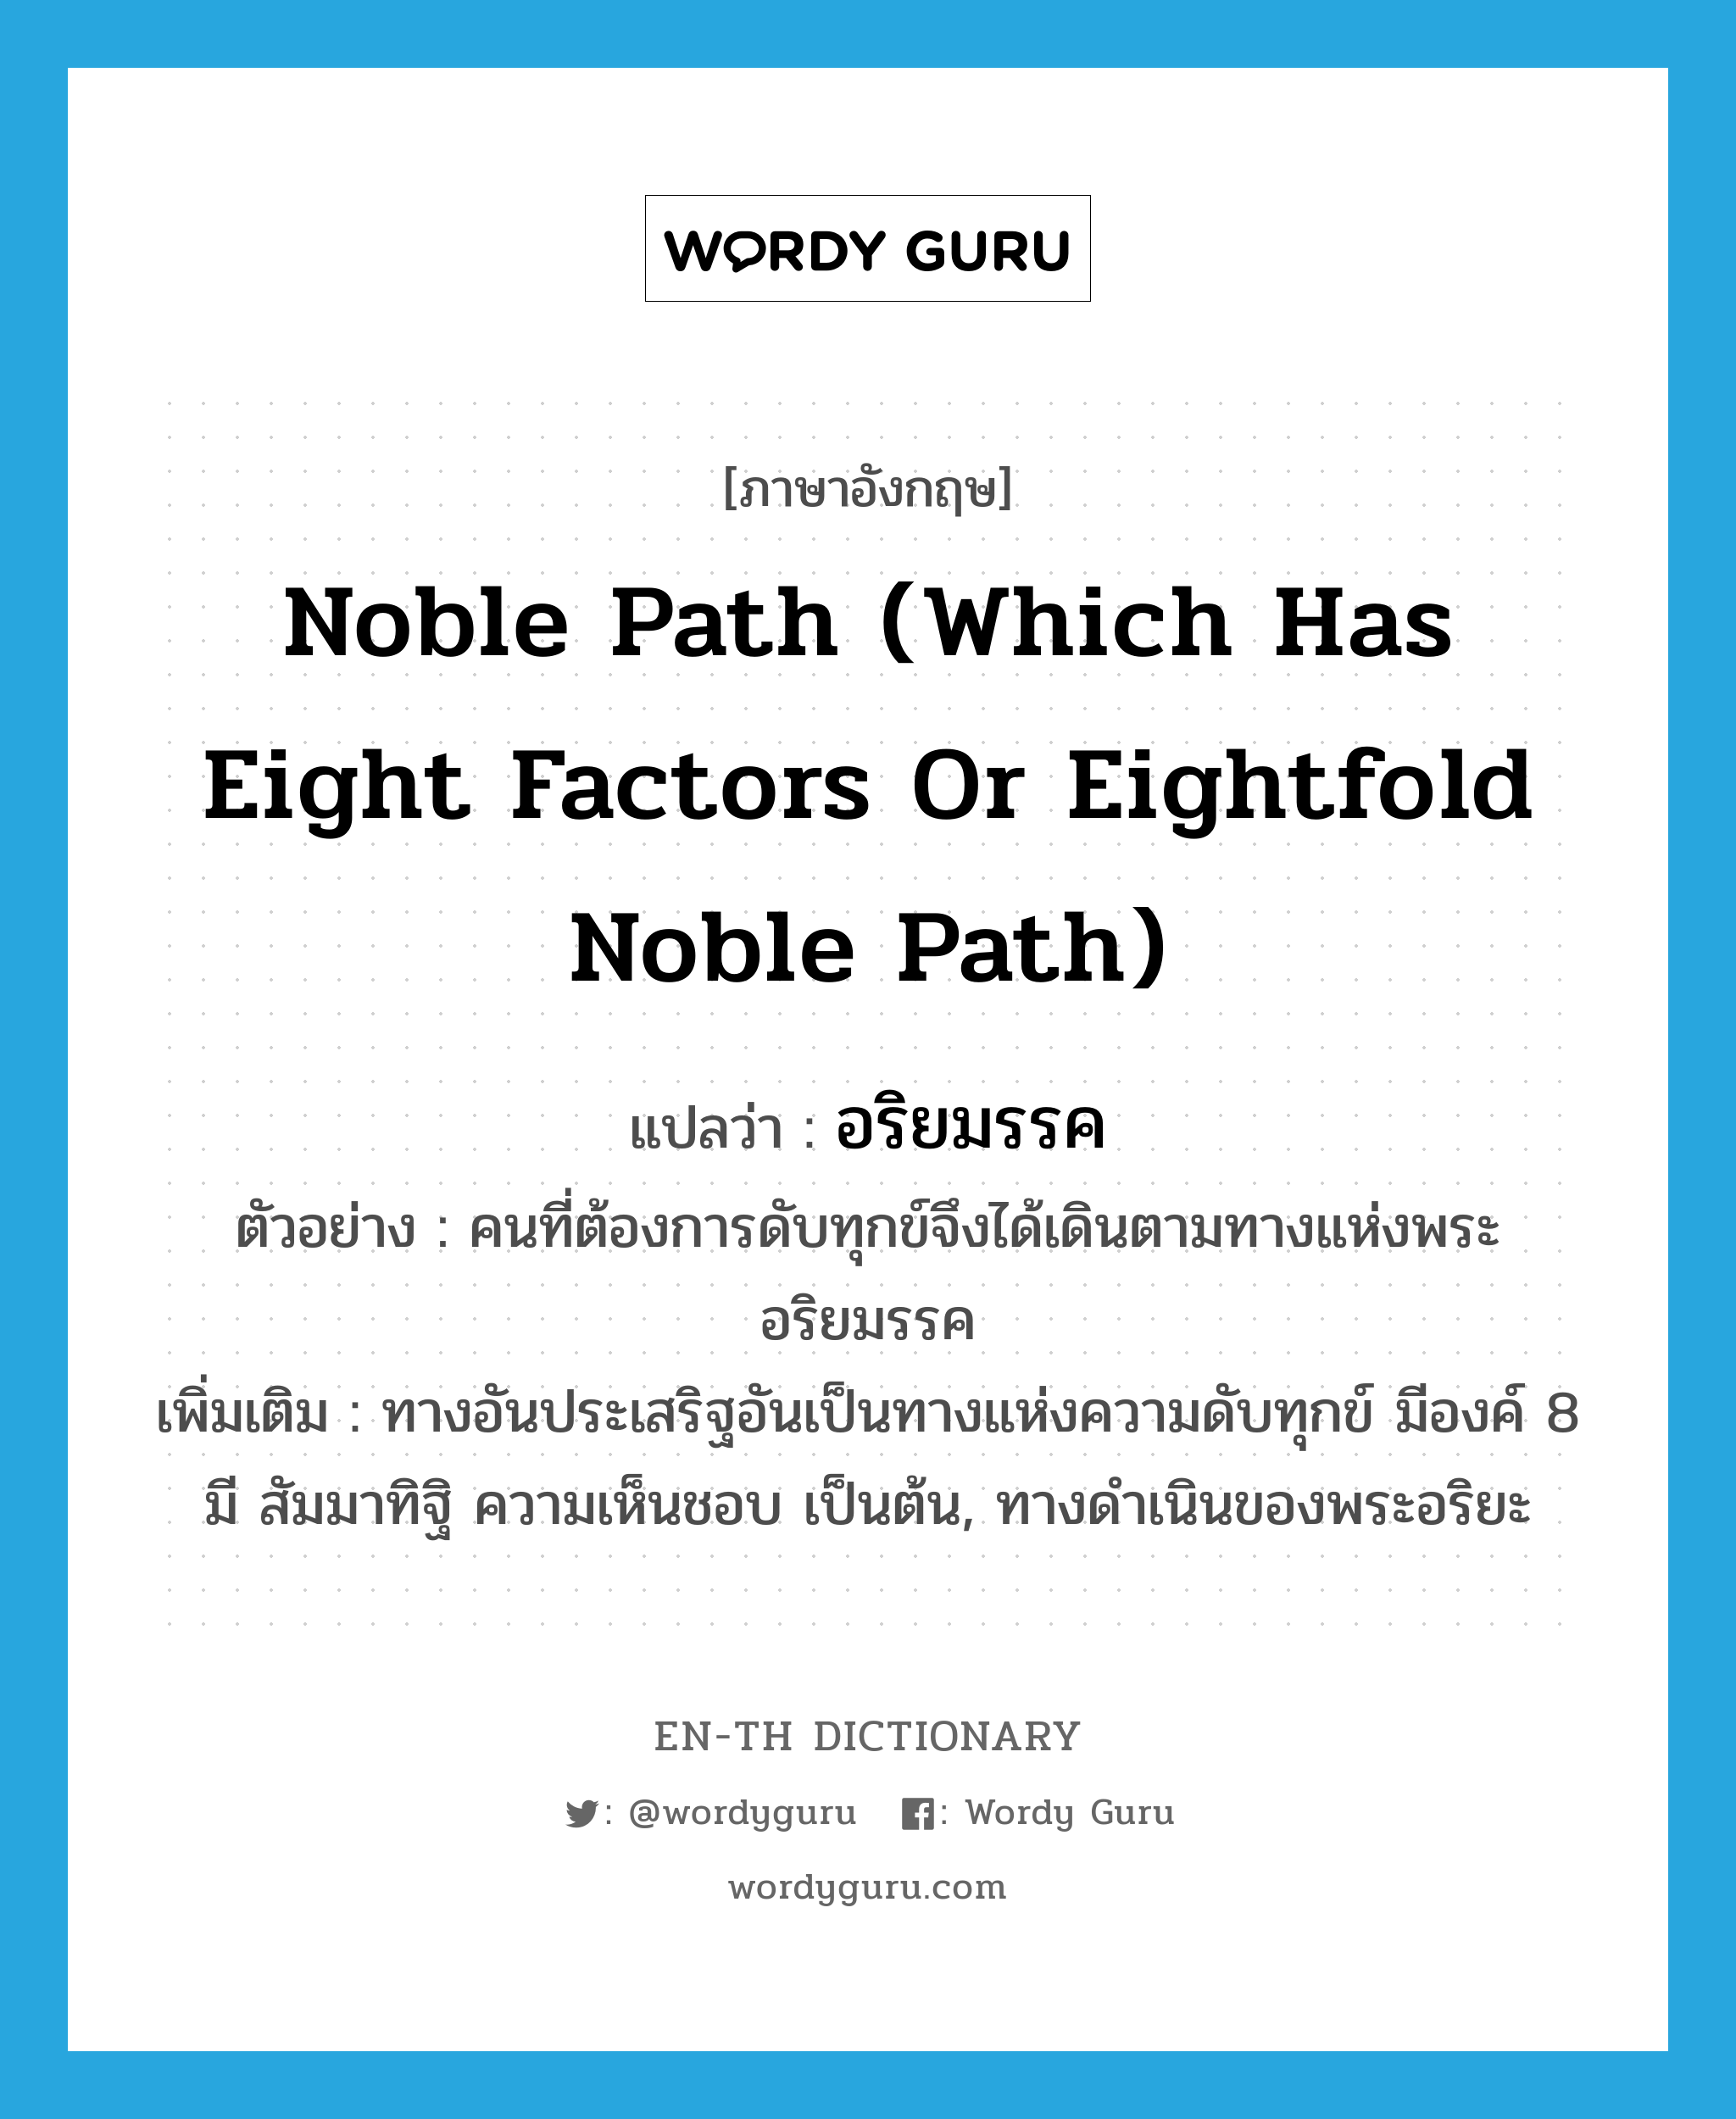 noble path (which has eight factors or eightfold noble path) แปลว่า?, คำศัพท์ภาษาอังกฤษ noble path (which has eight factors or eightfold noble path) แปลว่า อริยมรรค ประเภท N ตัวอย่าง คนที่ต้องการดับทุกข์จึงได้เดินตามทางแห่งพระอริยมรรค เพิ่มเติม ทางอันประเสริฐอันเป็นทางแห่งความดับทุกข์ มีองค์ 8 มี สัมมาทิฐิ ความเห็นชอบ เป็นต้น, ทางดำเนินของพระอริยะ หมวด N